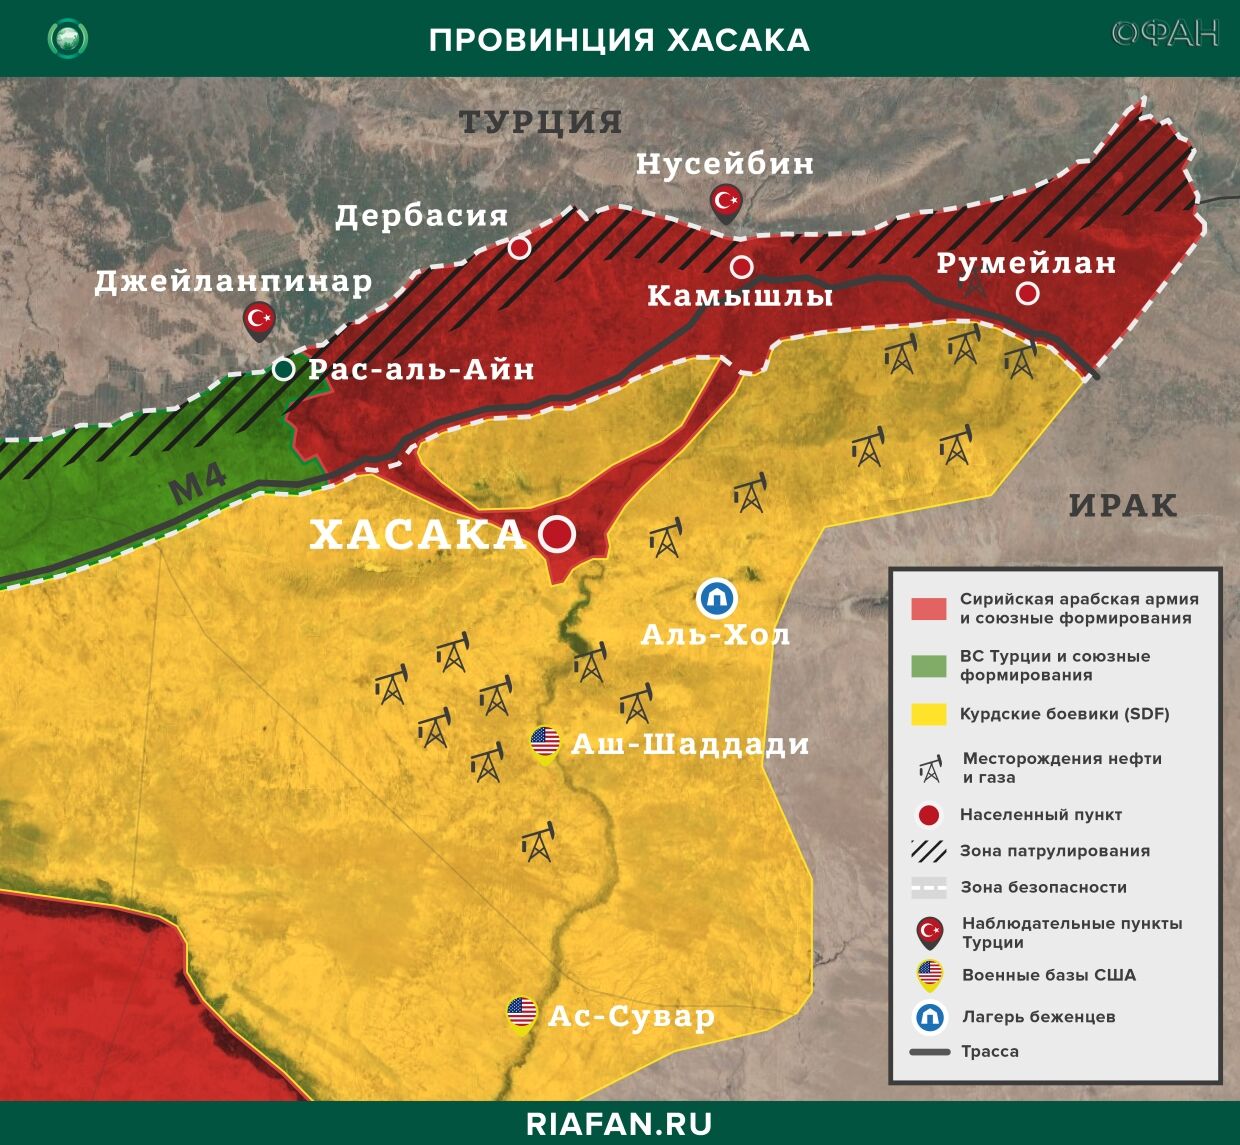 Nouvelles de Syrie 17 Avril 22.30: 5 новых случаев заражения коронавирусом в САР, союзники Турции обстреляли жилые дома в Хасаке